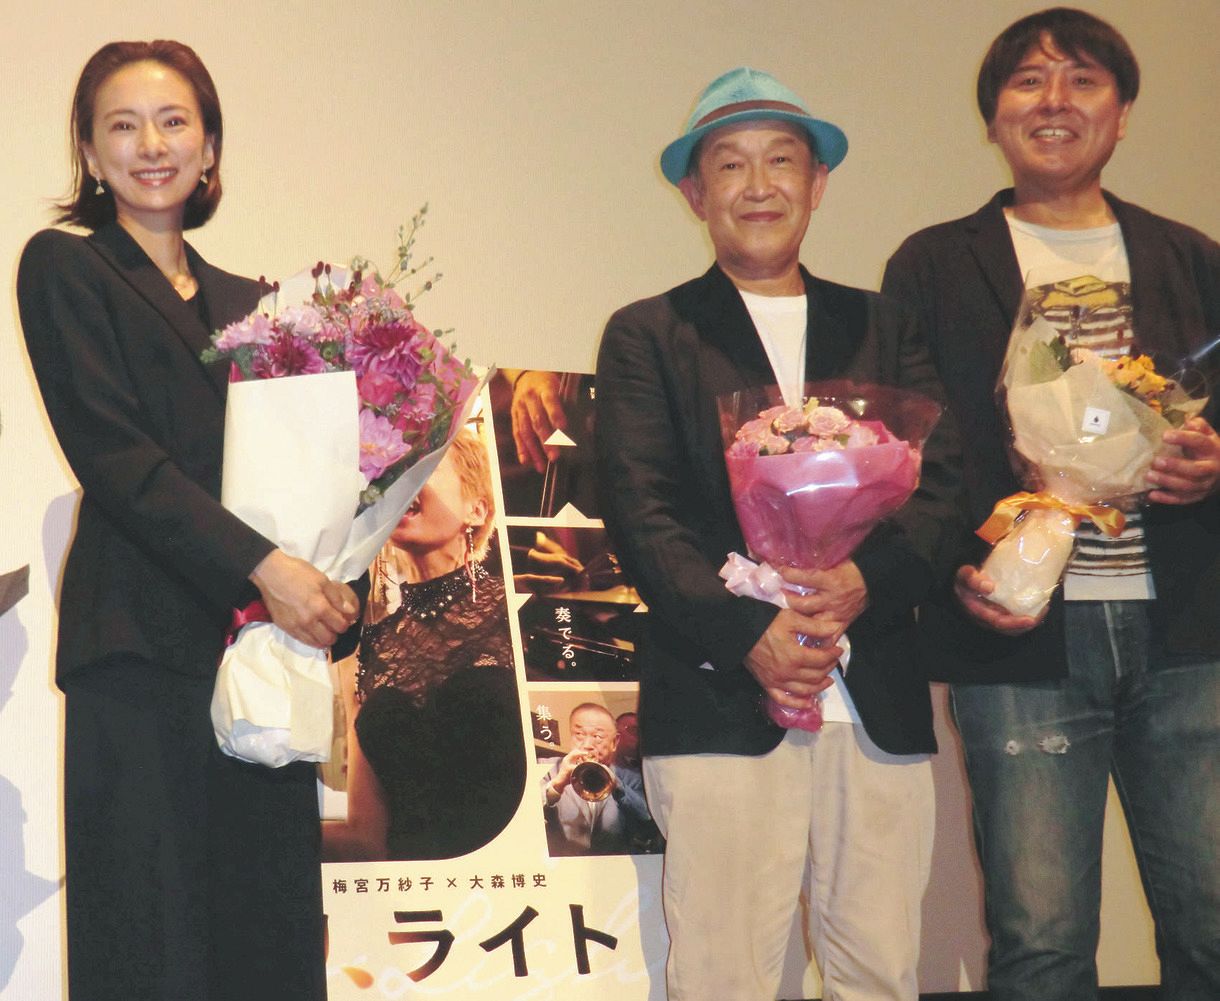 初主演映画の公開記念舞台あいさつに登壇した左から梅宮万紗子、大月秀幸、一ノ瀬晶監督